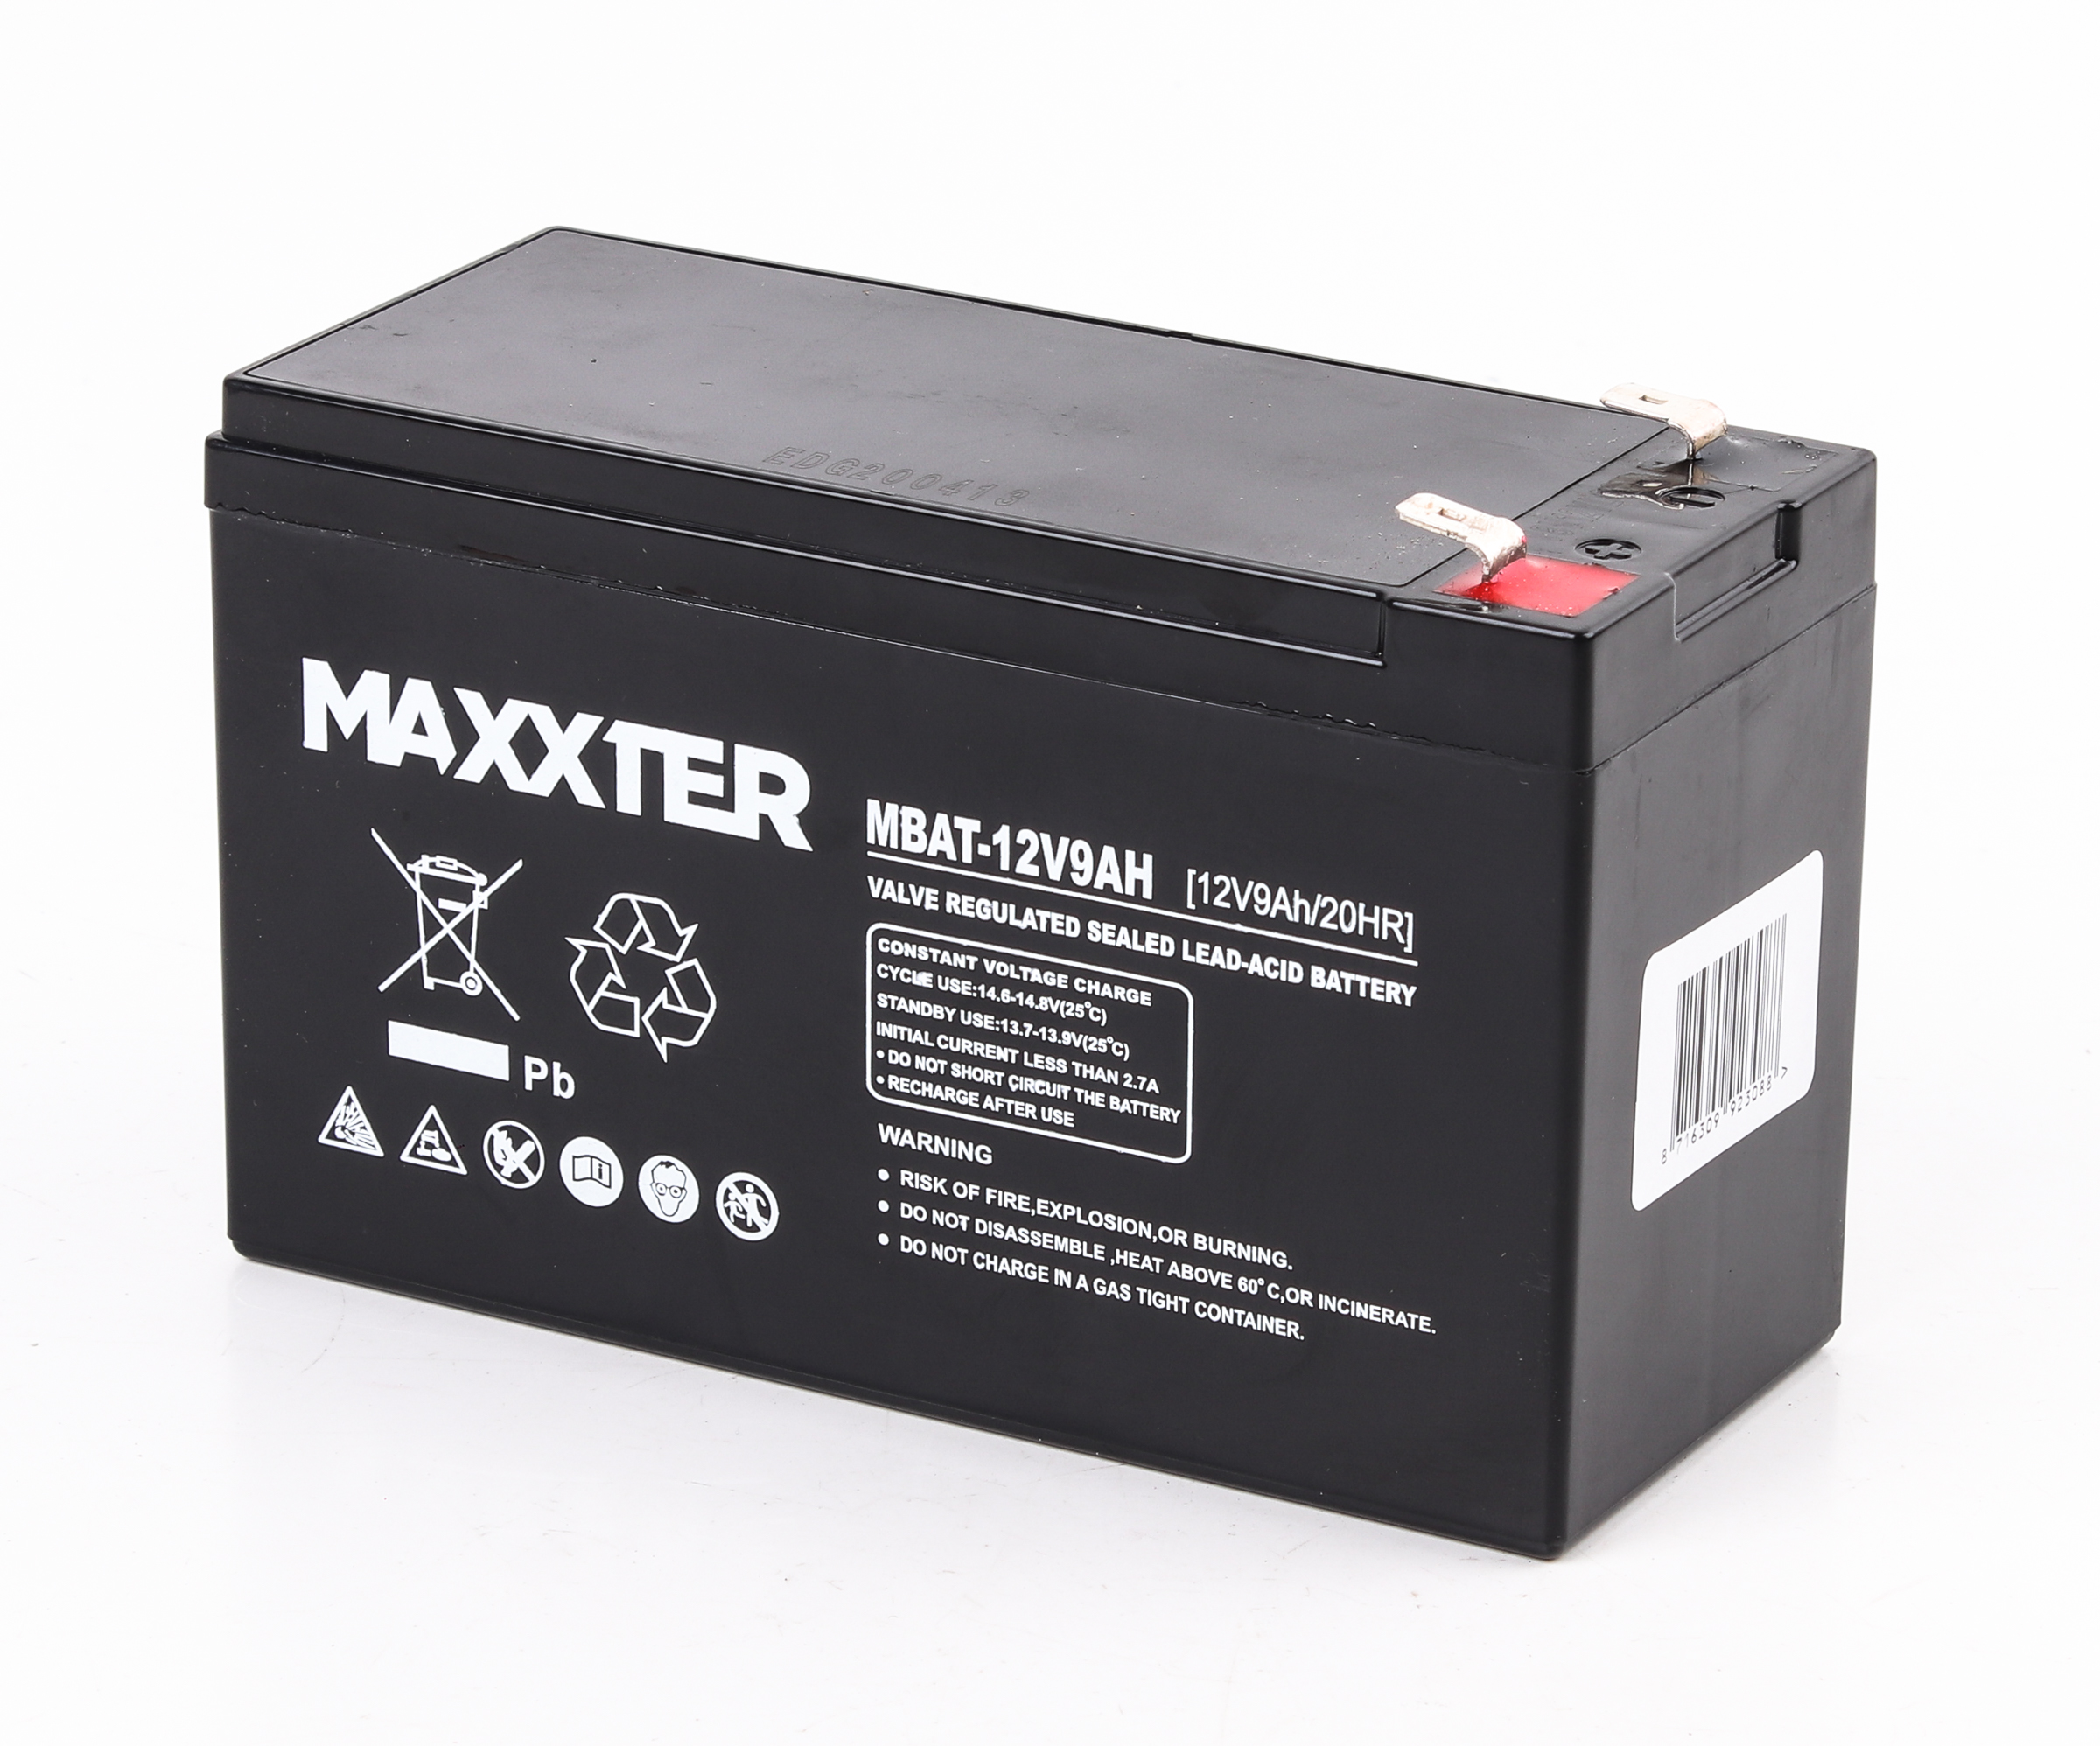 Купить аккумулятор Maxxter MBAT-12V9AH в Полтаве